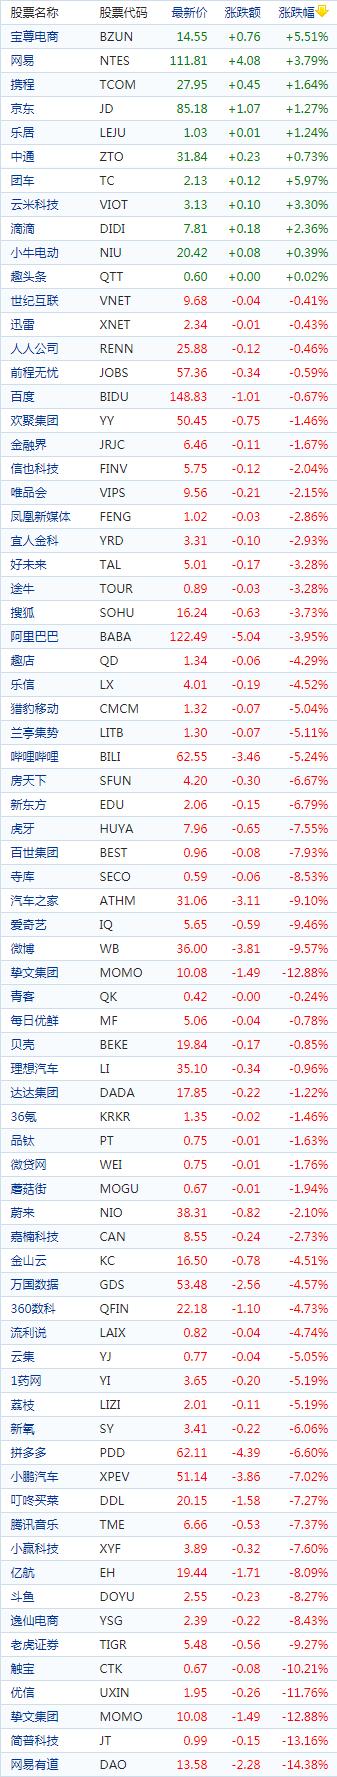 中国概念股周三收盘普遍下跌教育股多数重挫小鹏汽车跌逾9%